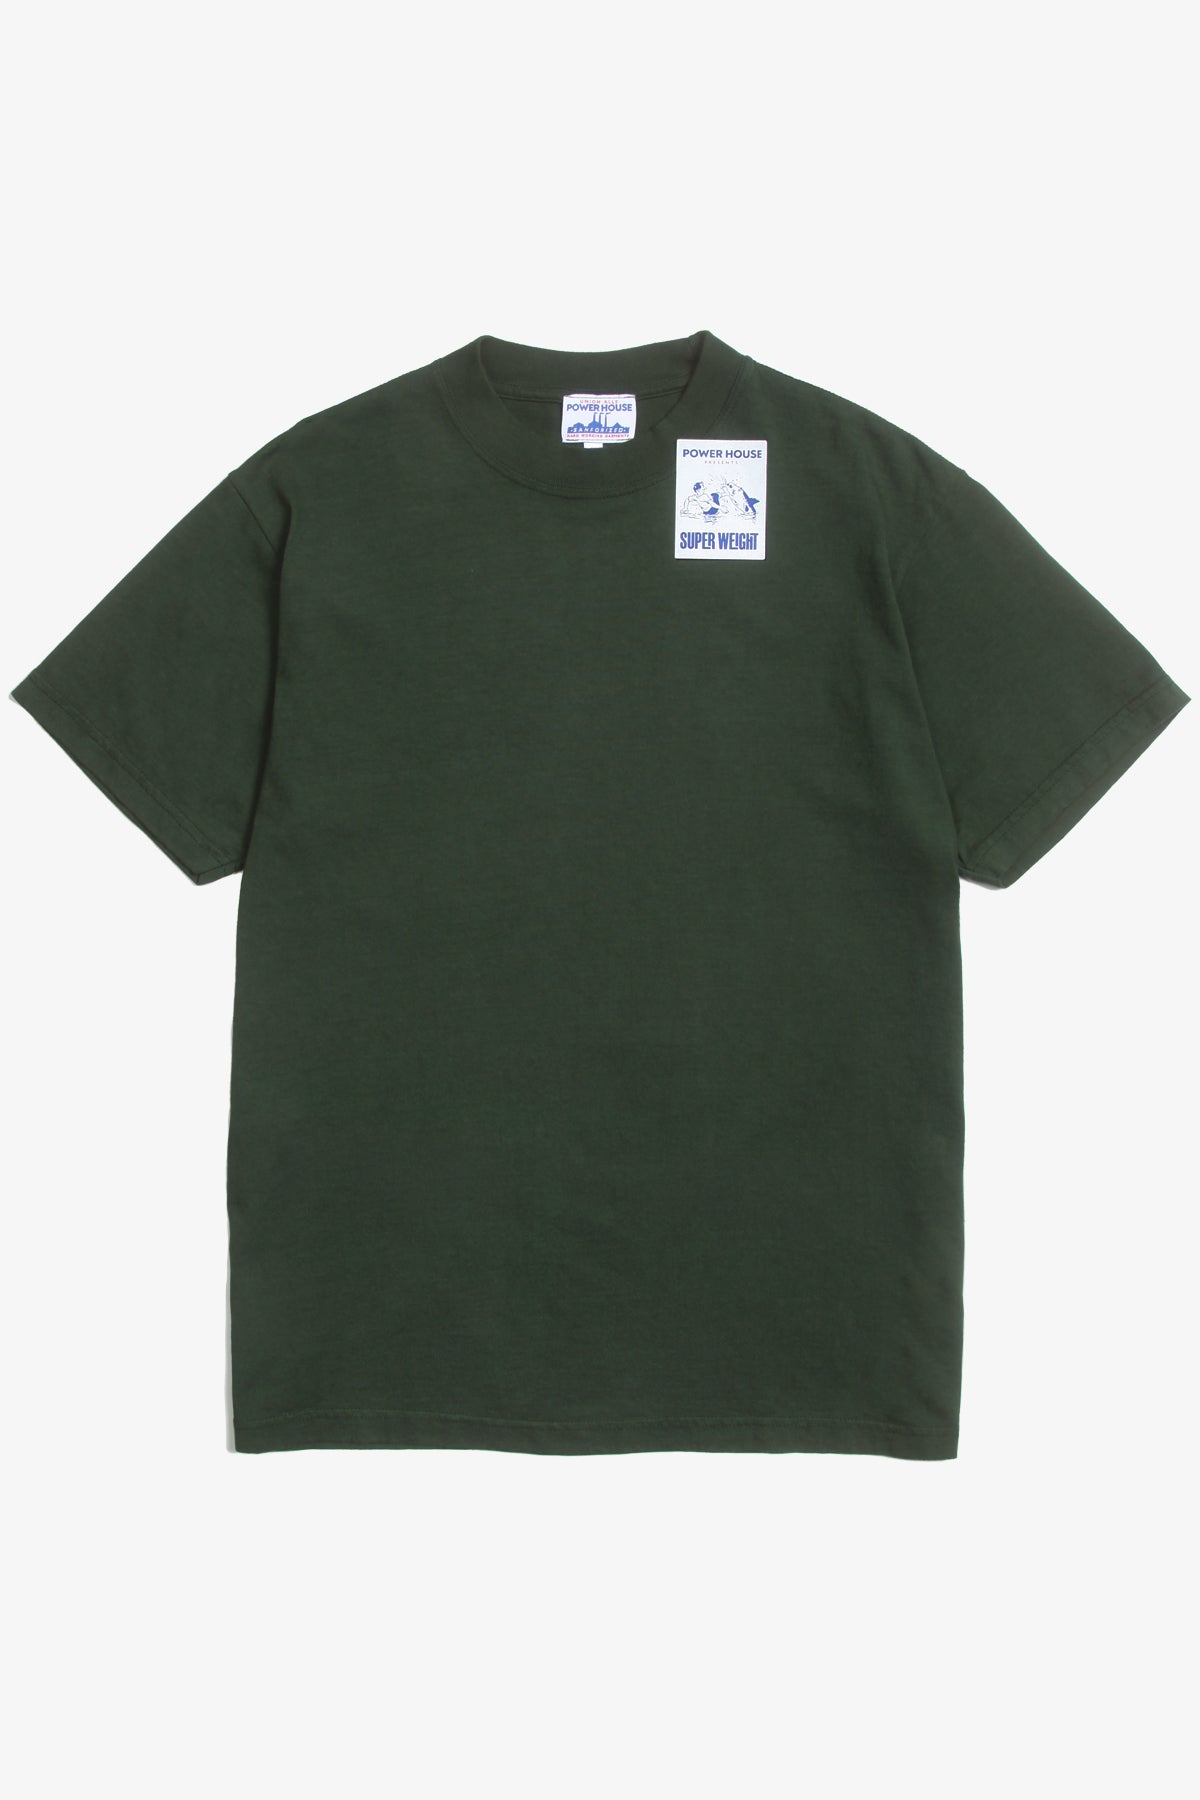 Power Goods - Super Weight T-Shirt - Dark Green